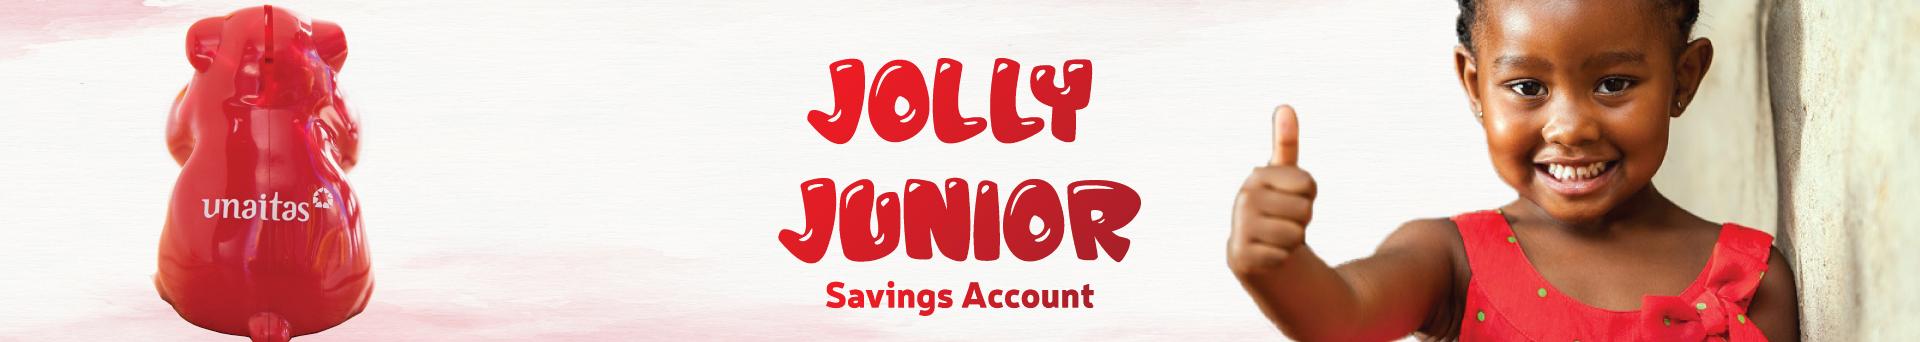 Jolly Junior Savings Account 